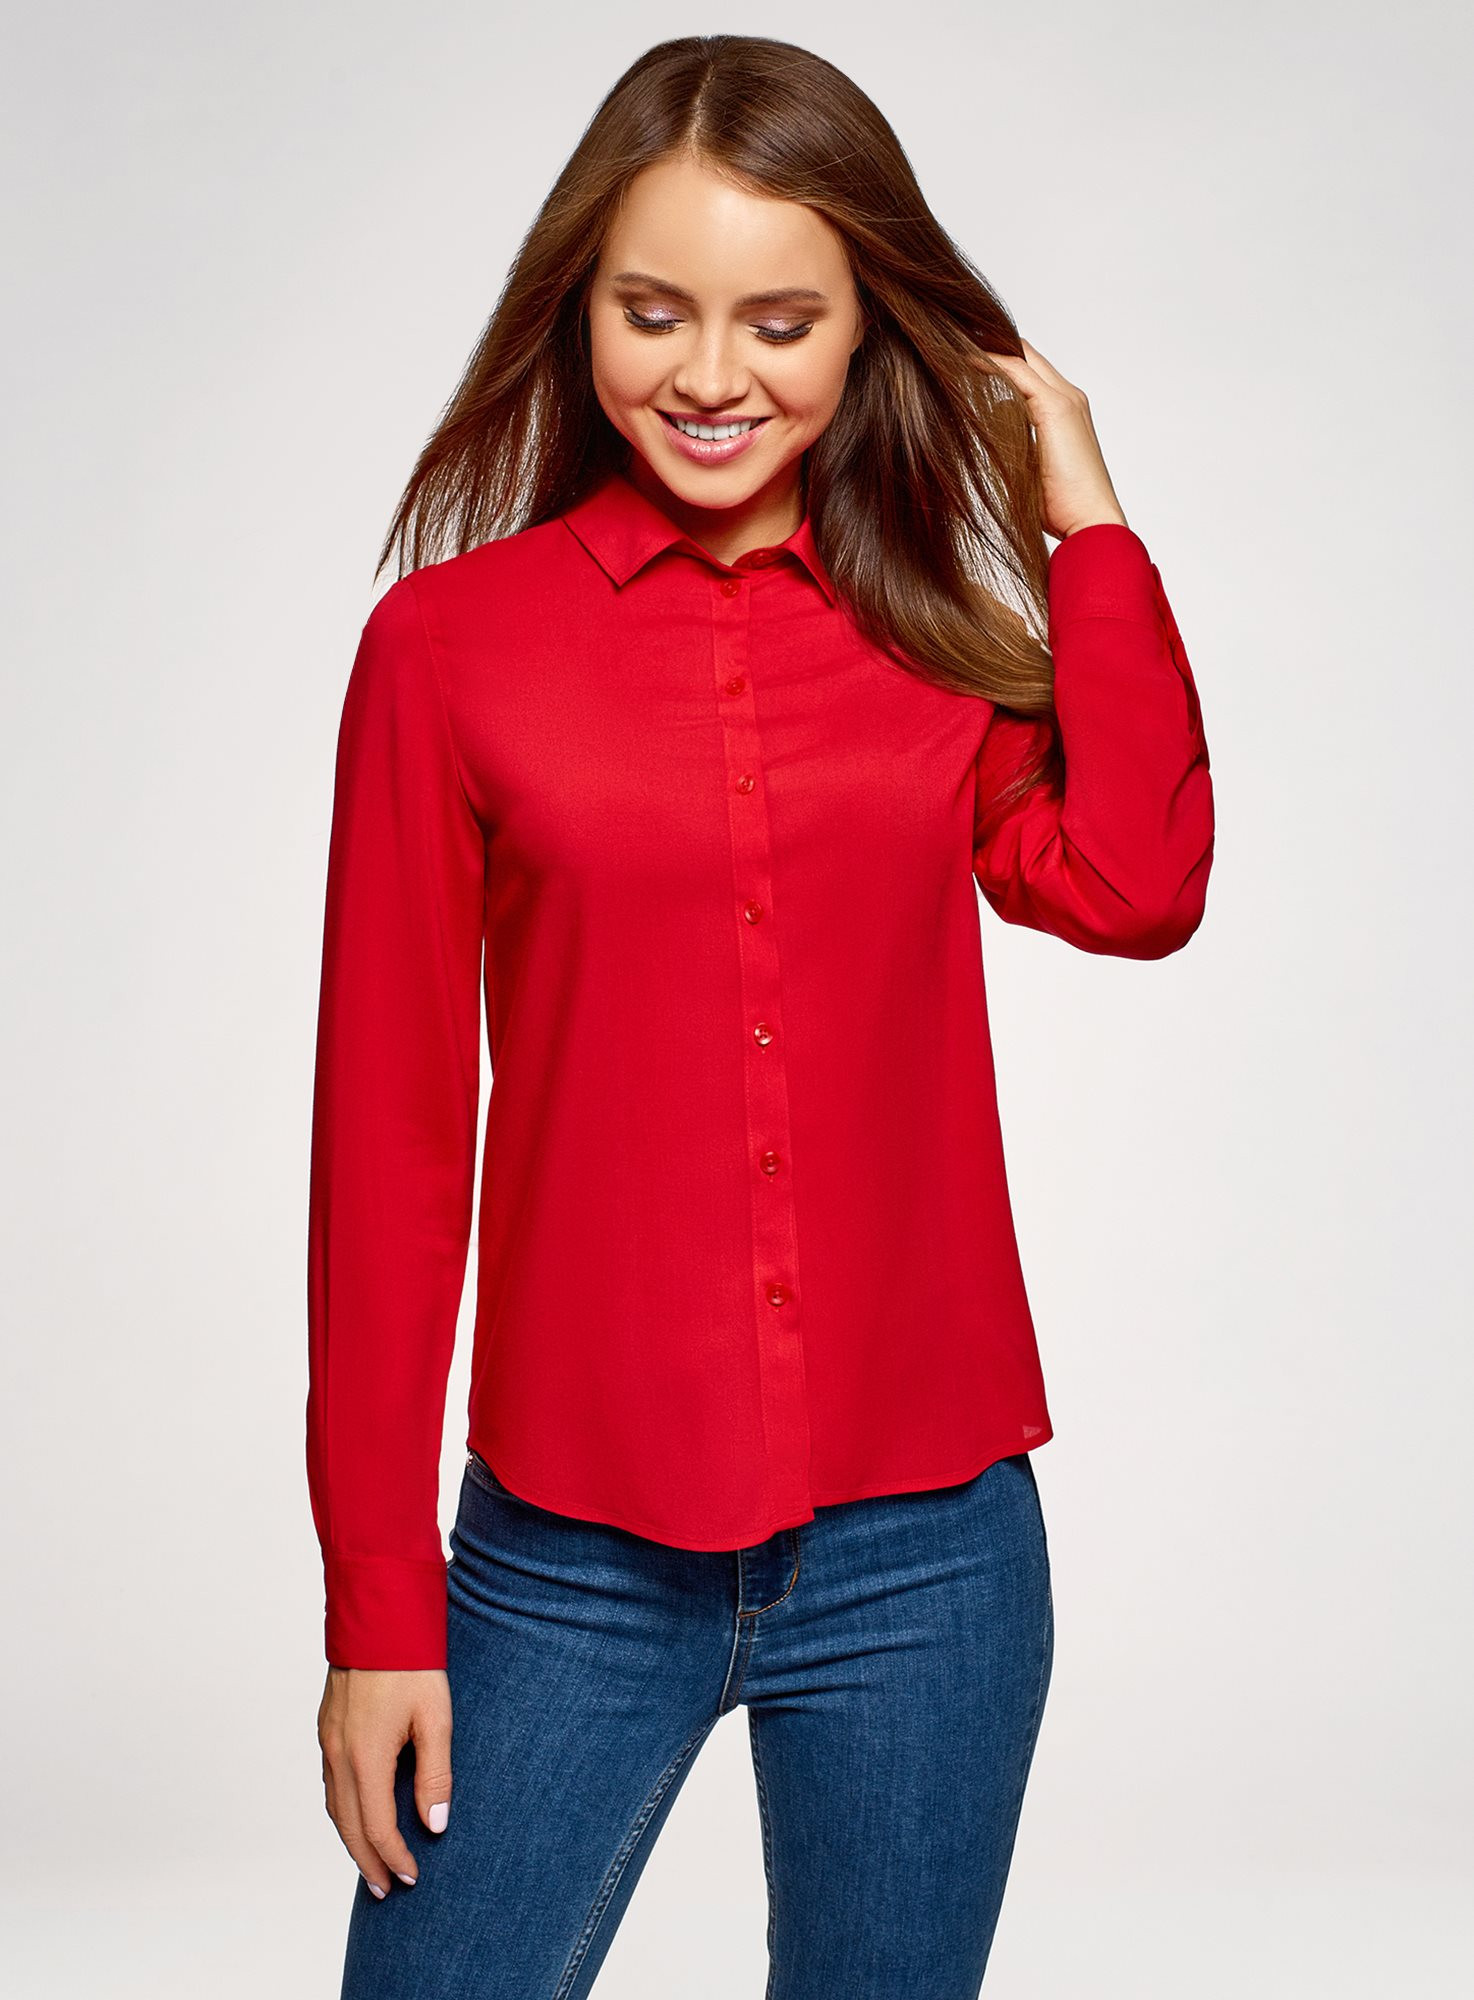 Блузки красного цвета. Oodji блузка красная. Oodji красная кофта. Красная блуза. Блузка с длинным рукавом.